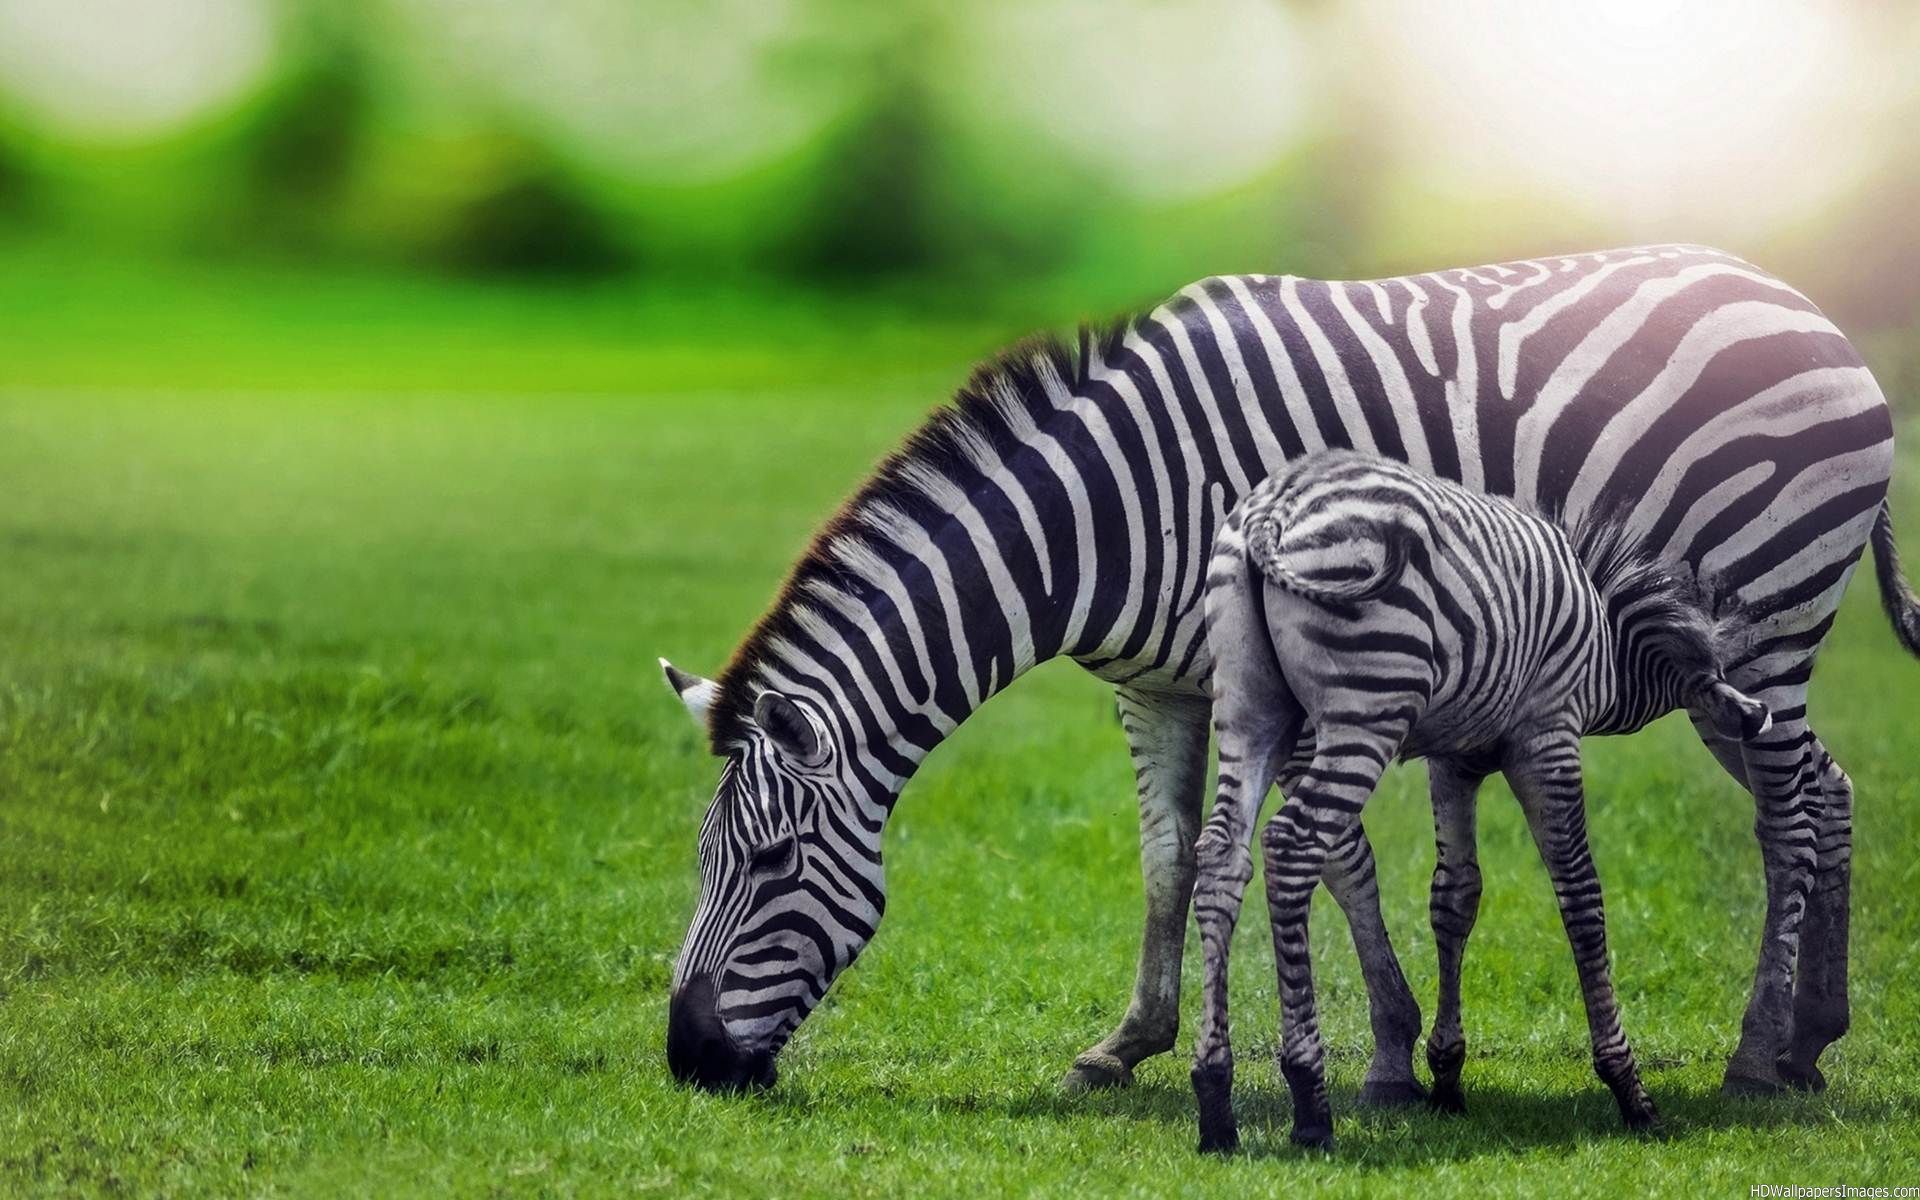 Share The Post Zebra Animal Wallpaper HD For Desktop